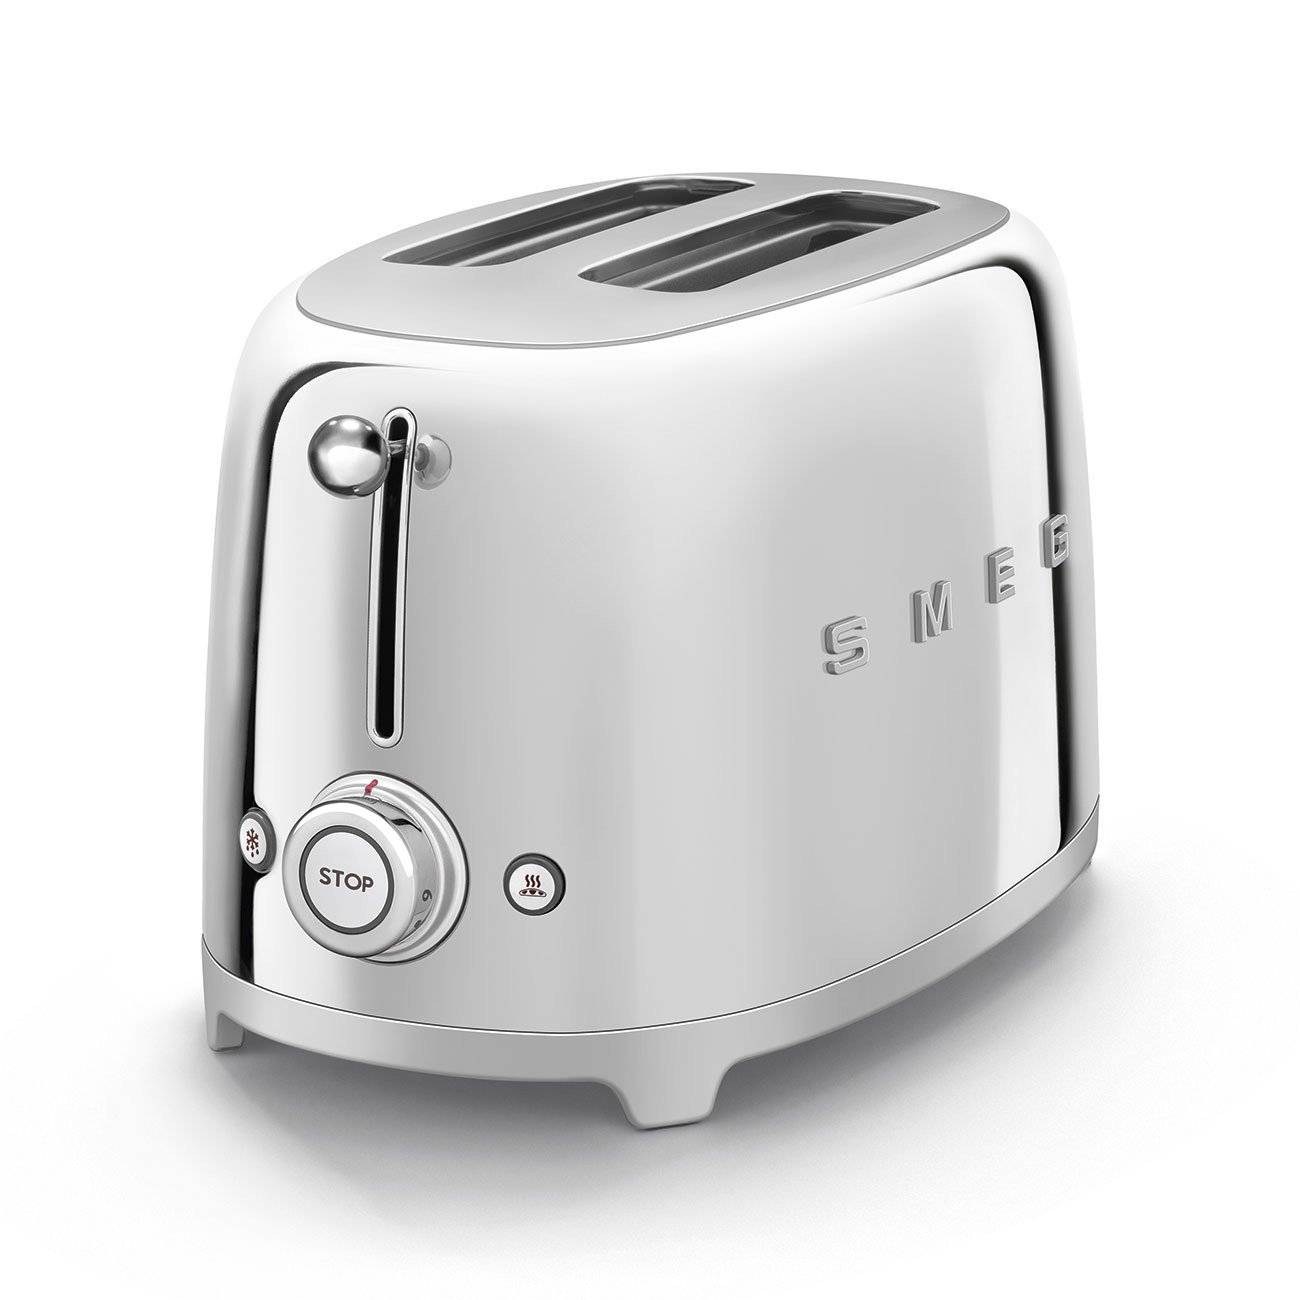 Smeg Chrome 2 slot toaster